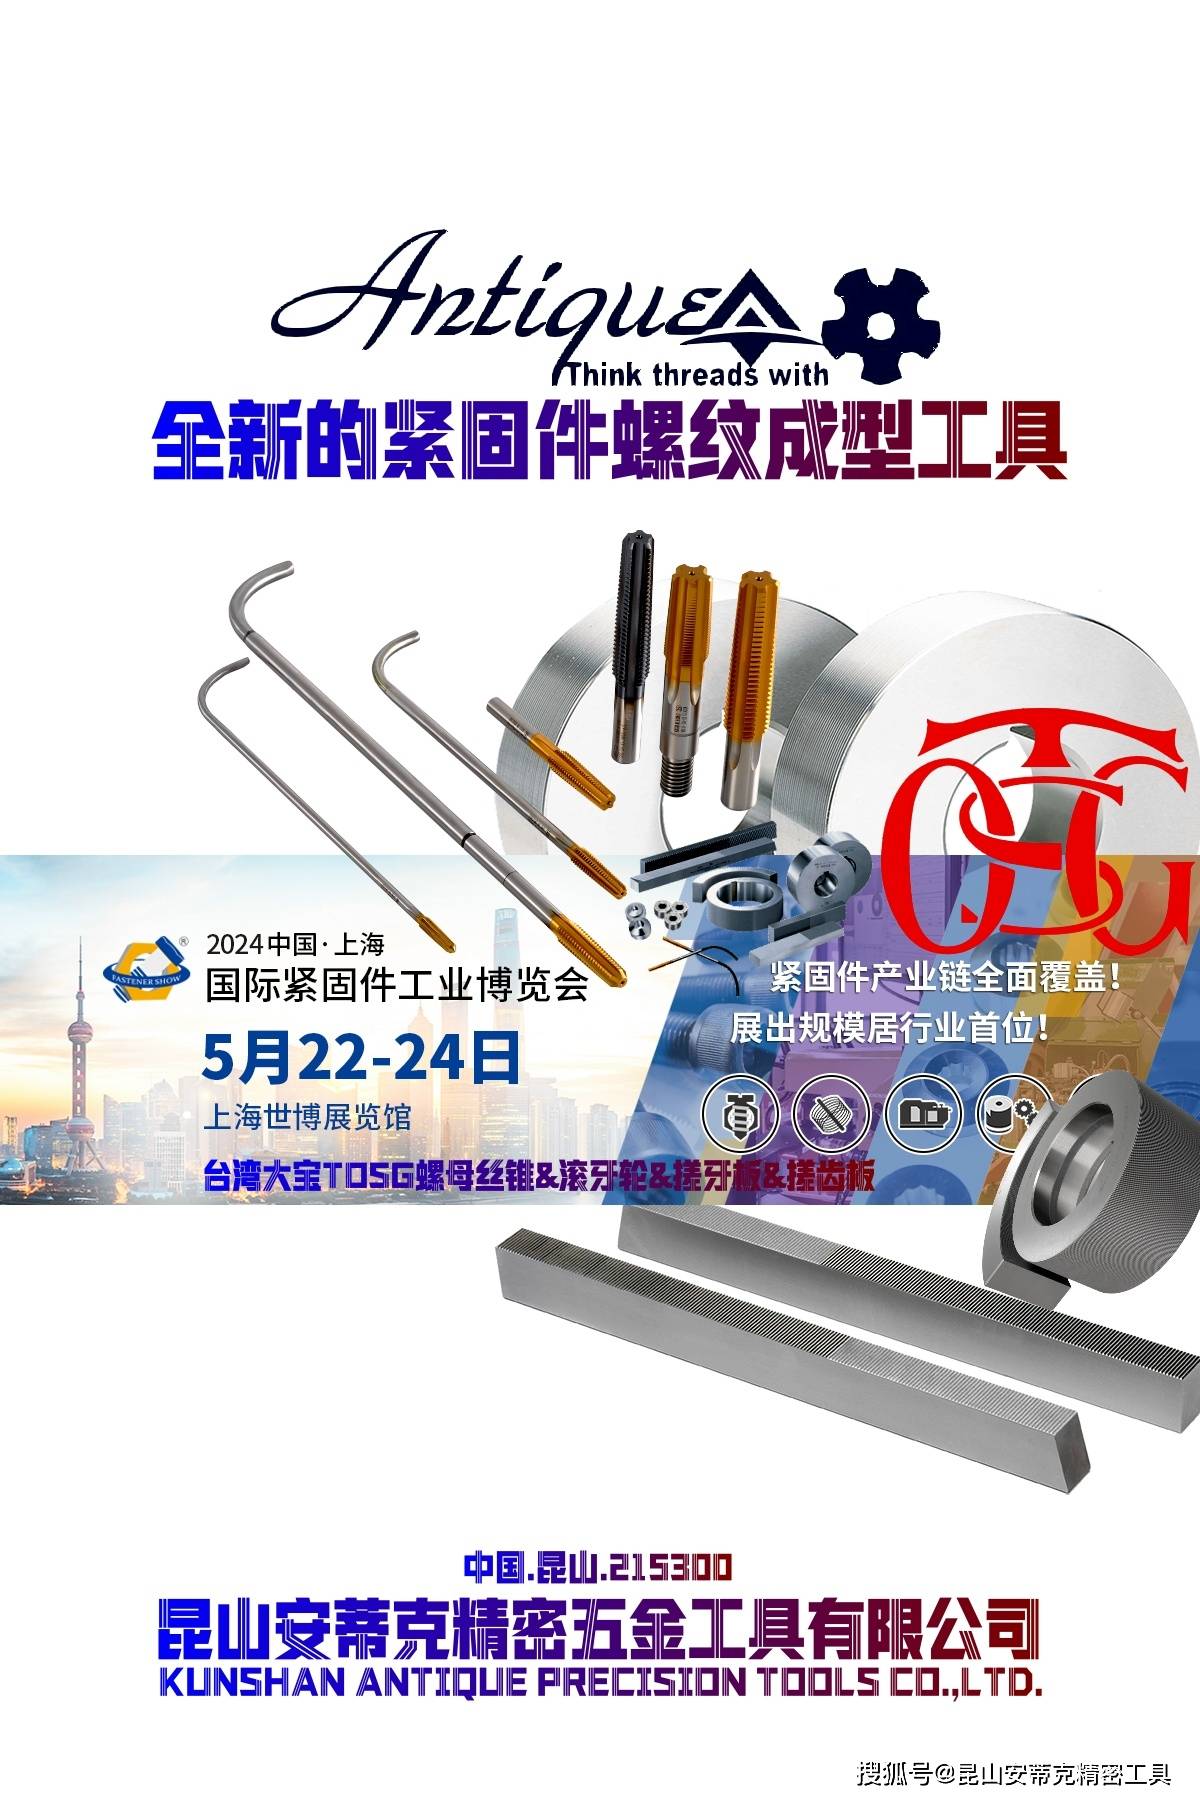 2024 上海国际紧固件展/2024 中国61上海国际紧固件工业博览会